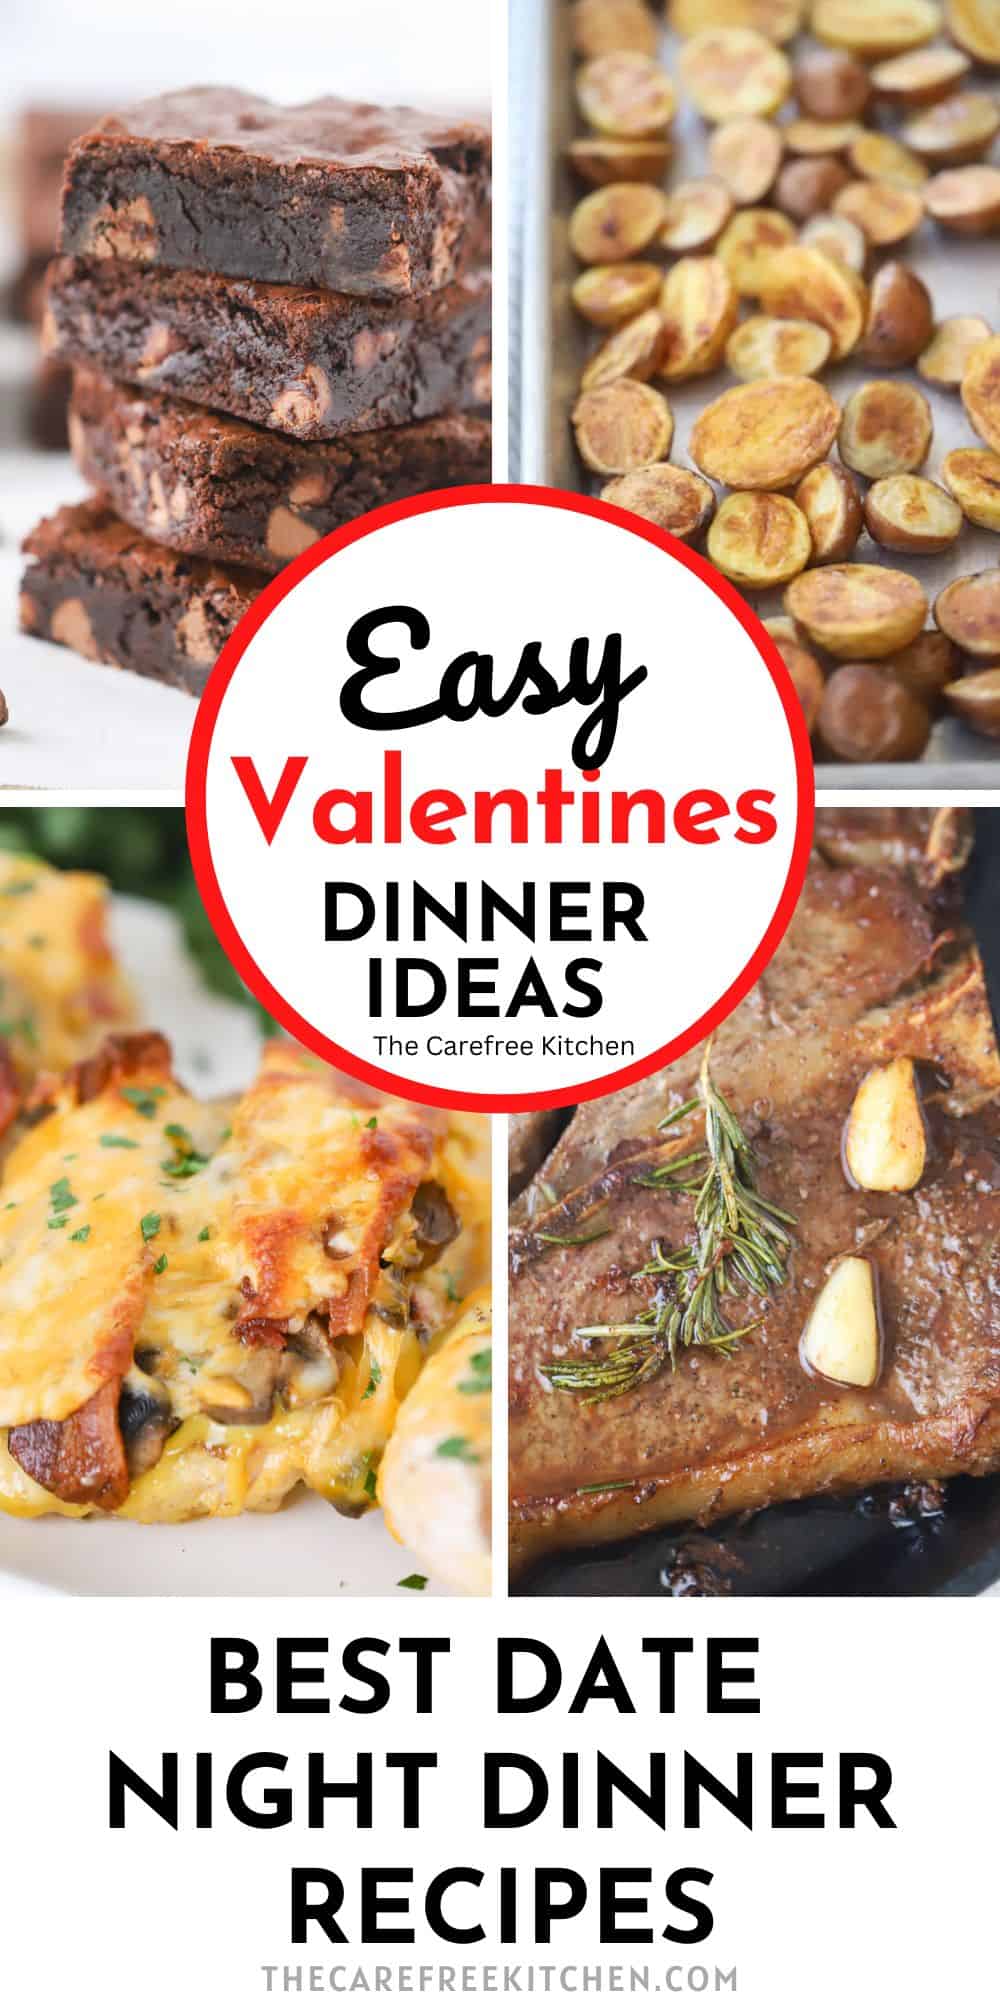 Valentine's Day Menu Ideas - The Carefree Kitchen